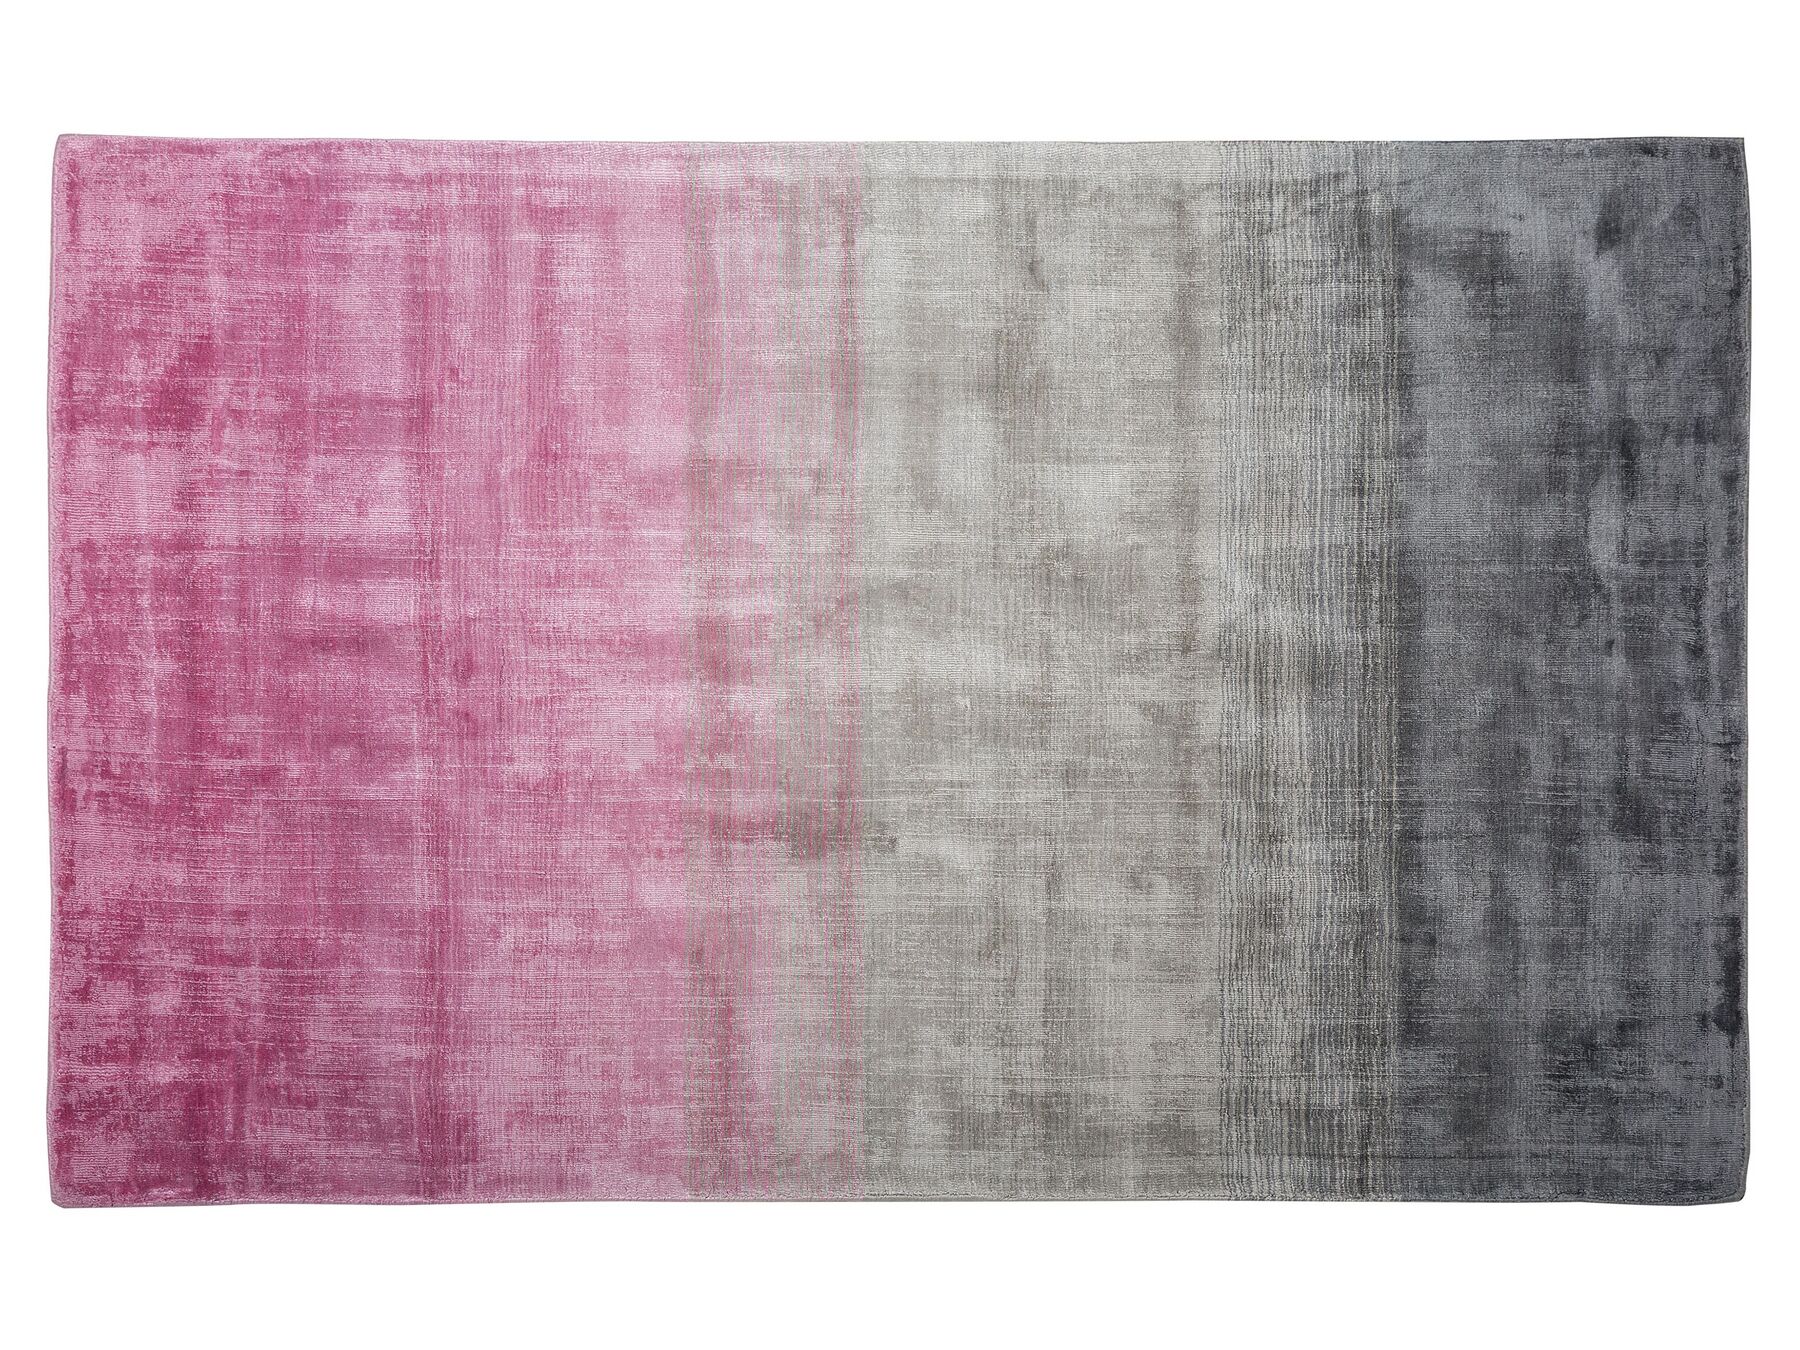 Tappeto a pelo corto grigio-rosa 140 x 200 cm ERCIS_710149